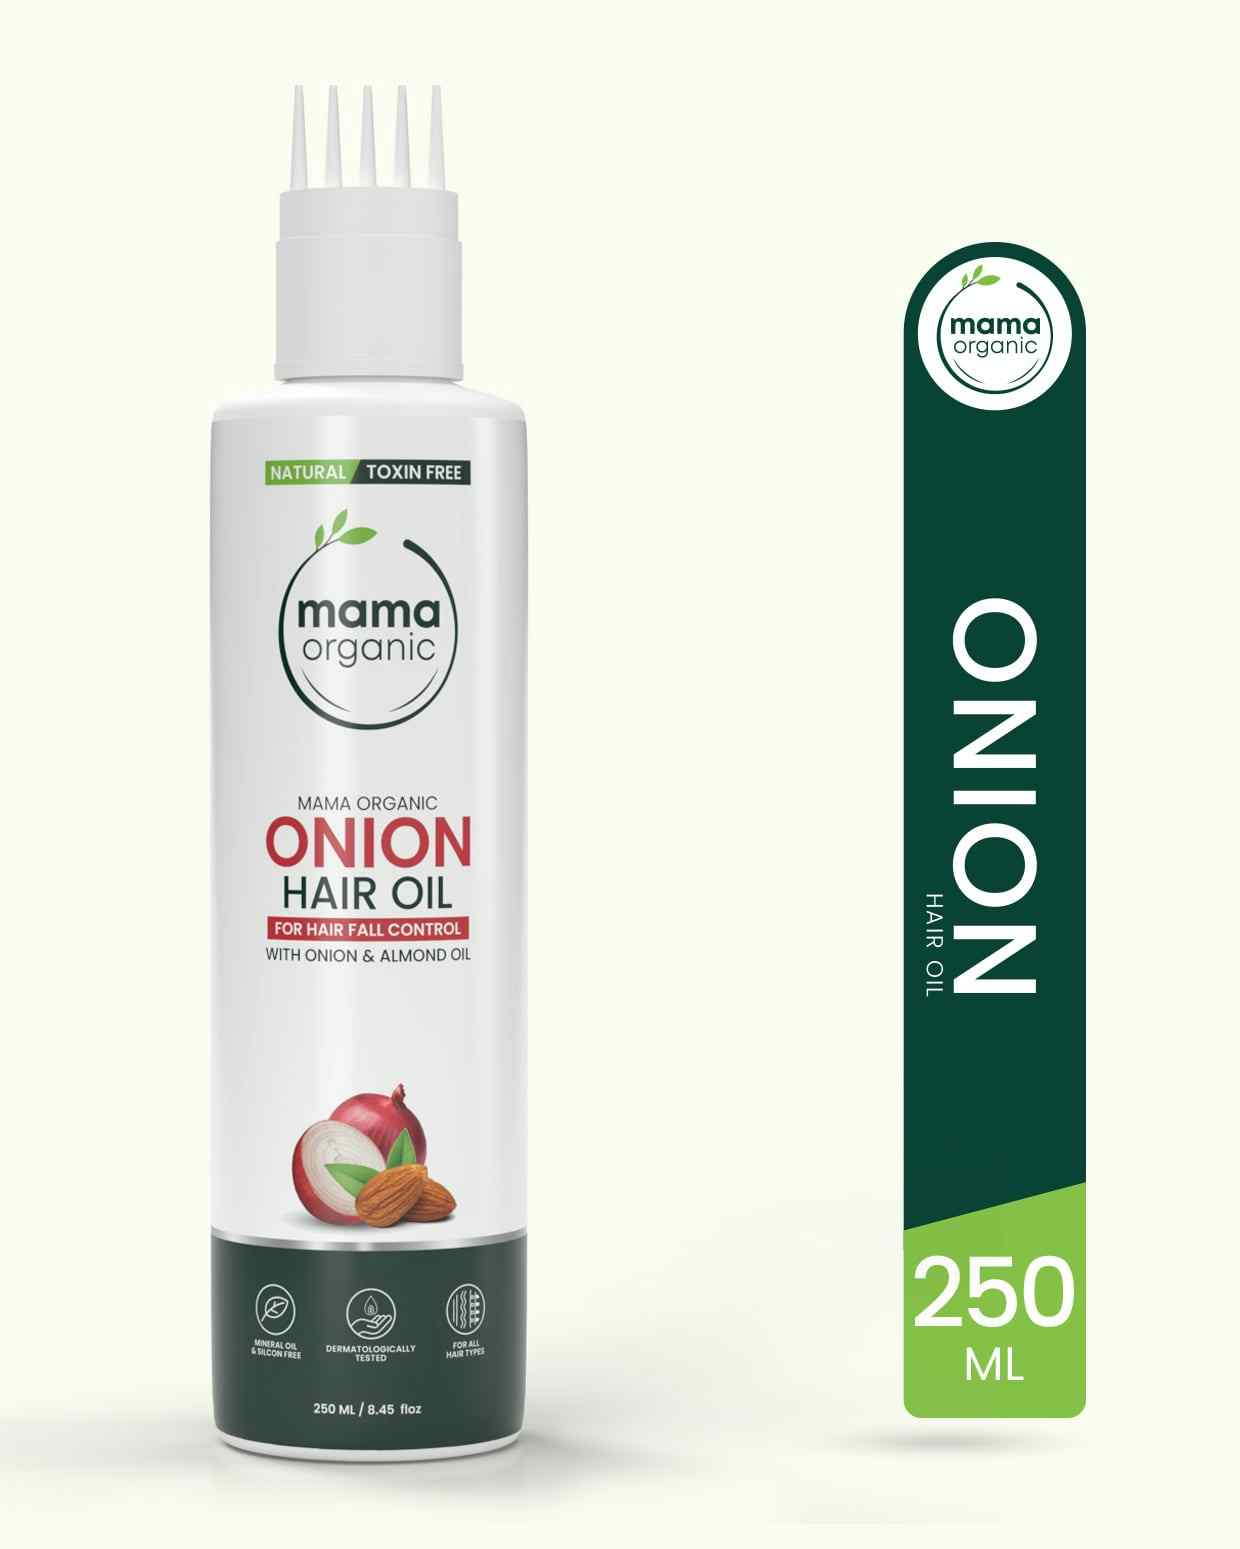 Mama Organic Onion Hair Oil For Hair Growth & Hair Fall Control | Men & Women | Natural & Toxin-Free - 250ml